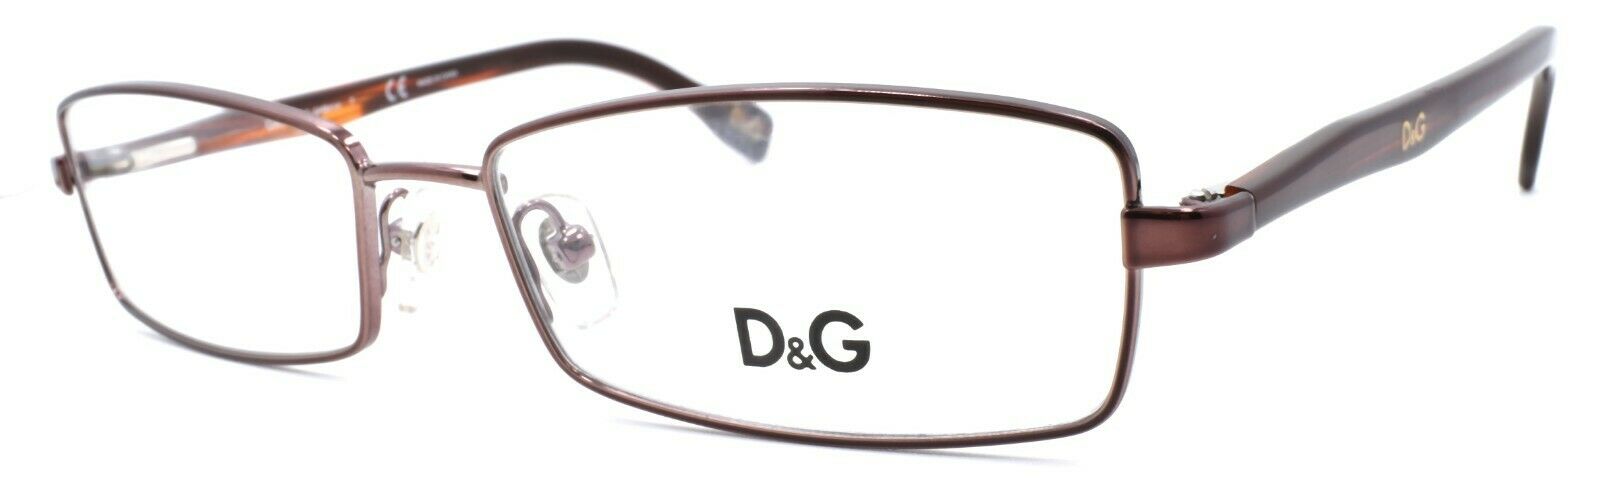 1-Dolce & Gabbana D&G 5079 152 Women's Eyeglasses 53-16-135 Brown-679420370903-IKSpecs